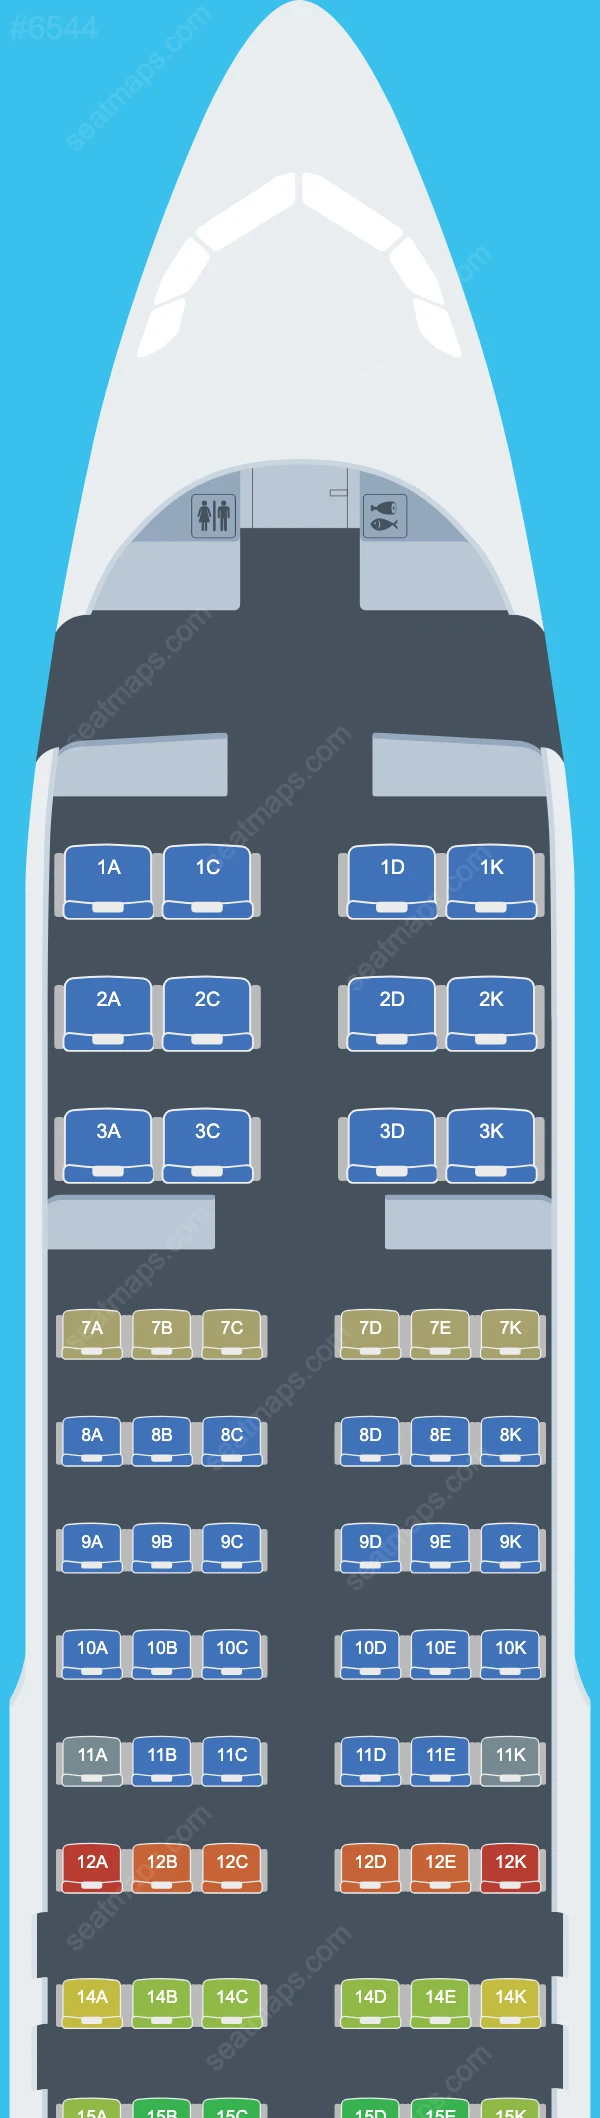 Avianca Ecuador Airbus A320 Seat Maps A320-200 V.1